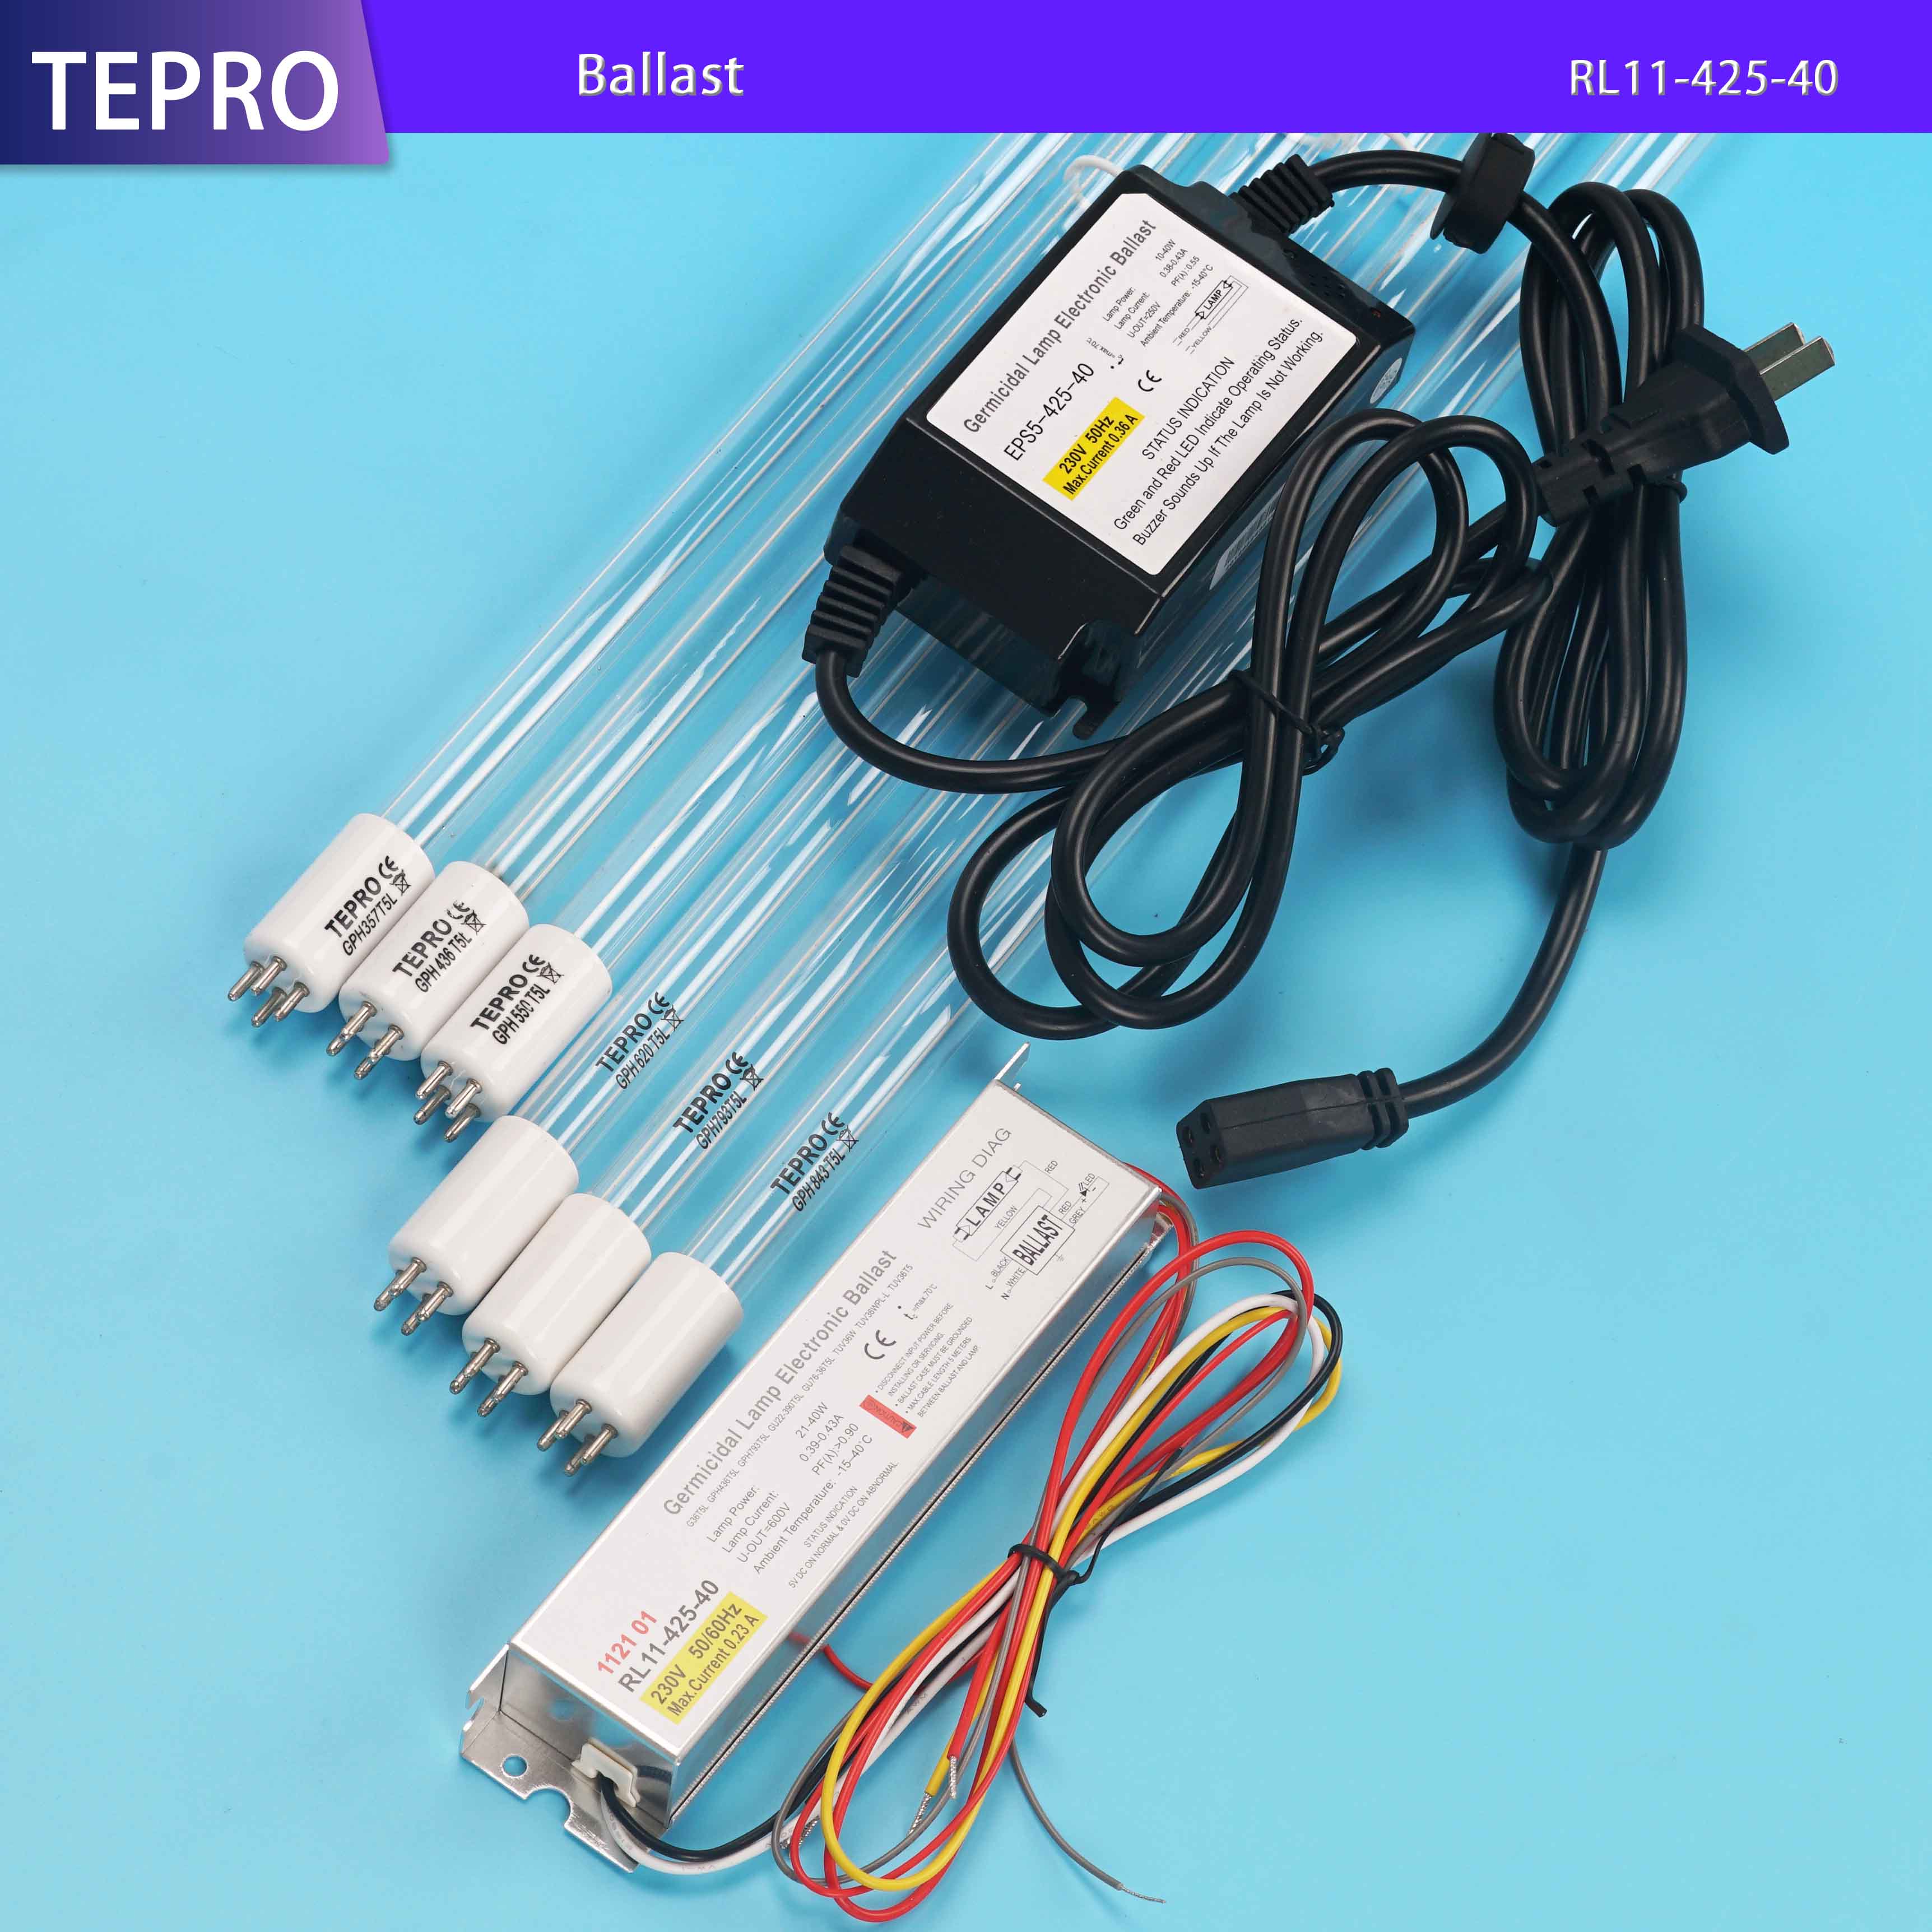 Tepro 8gpm uv light water purifier customized for aquarium-Tepro-img